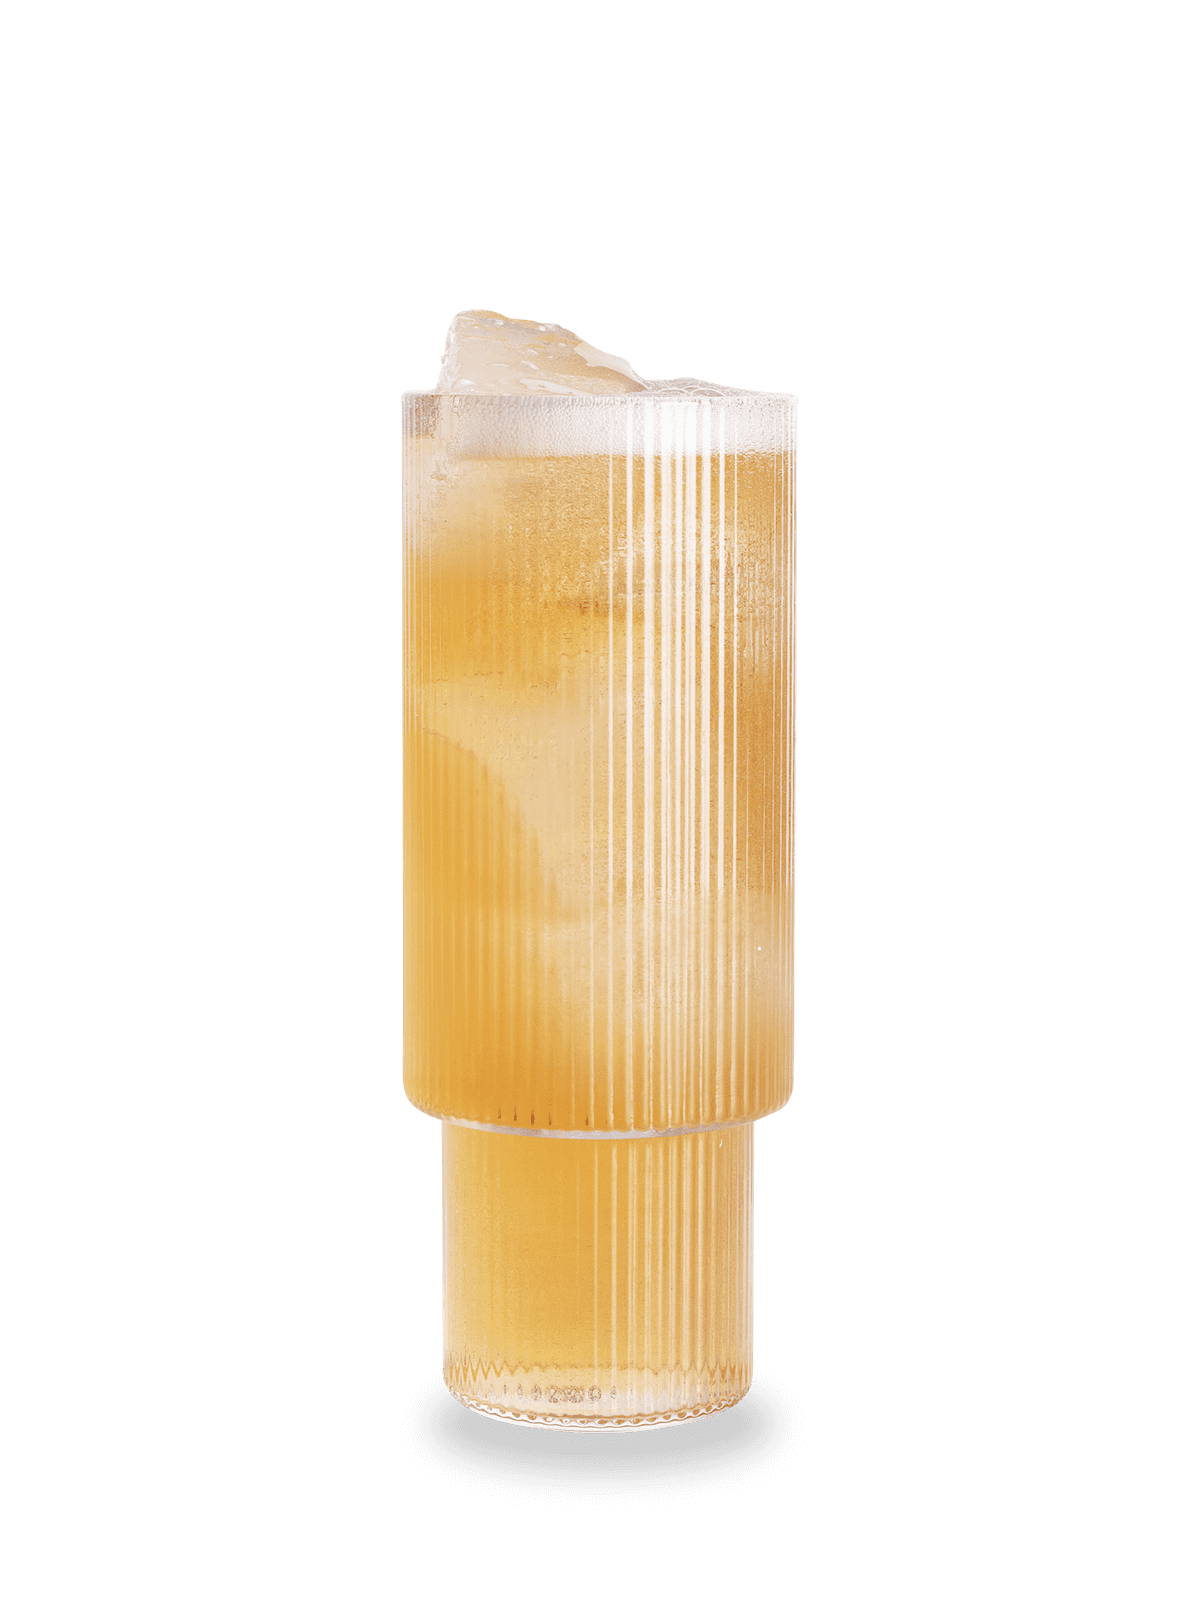 Karwendel Highball - Rezept für einen Alpen-Cocktail